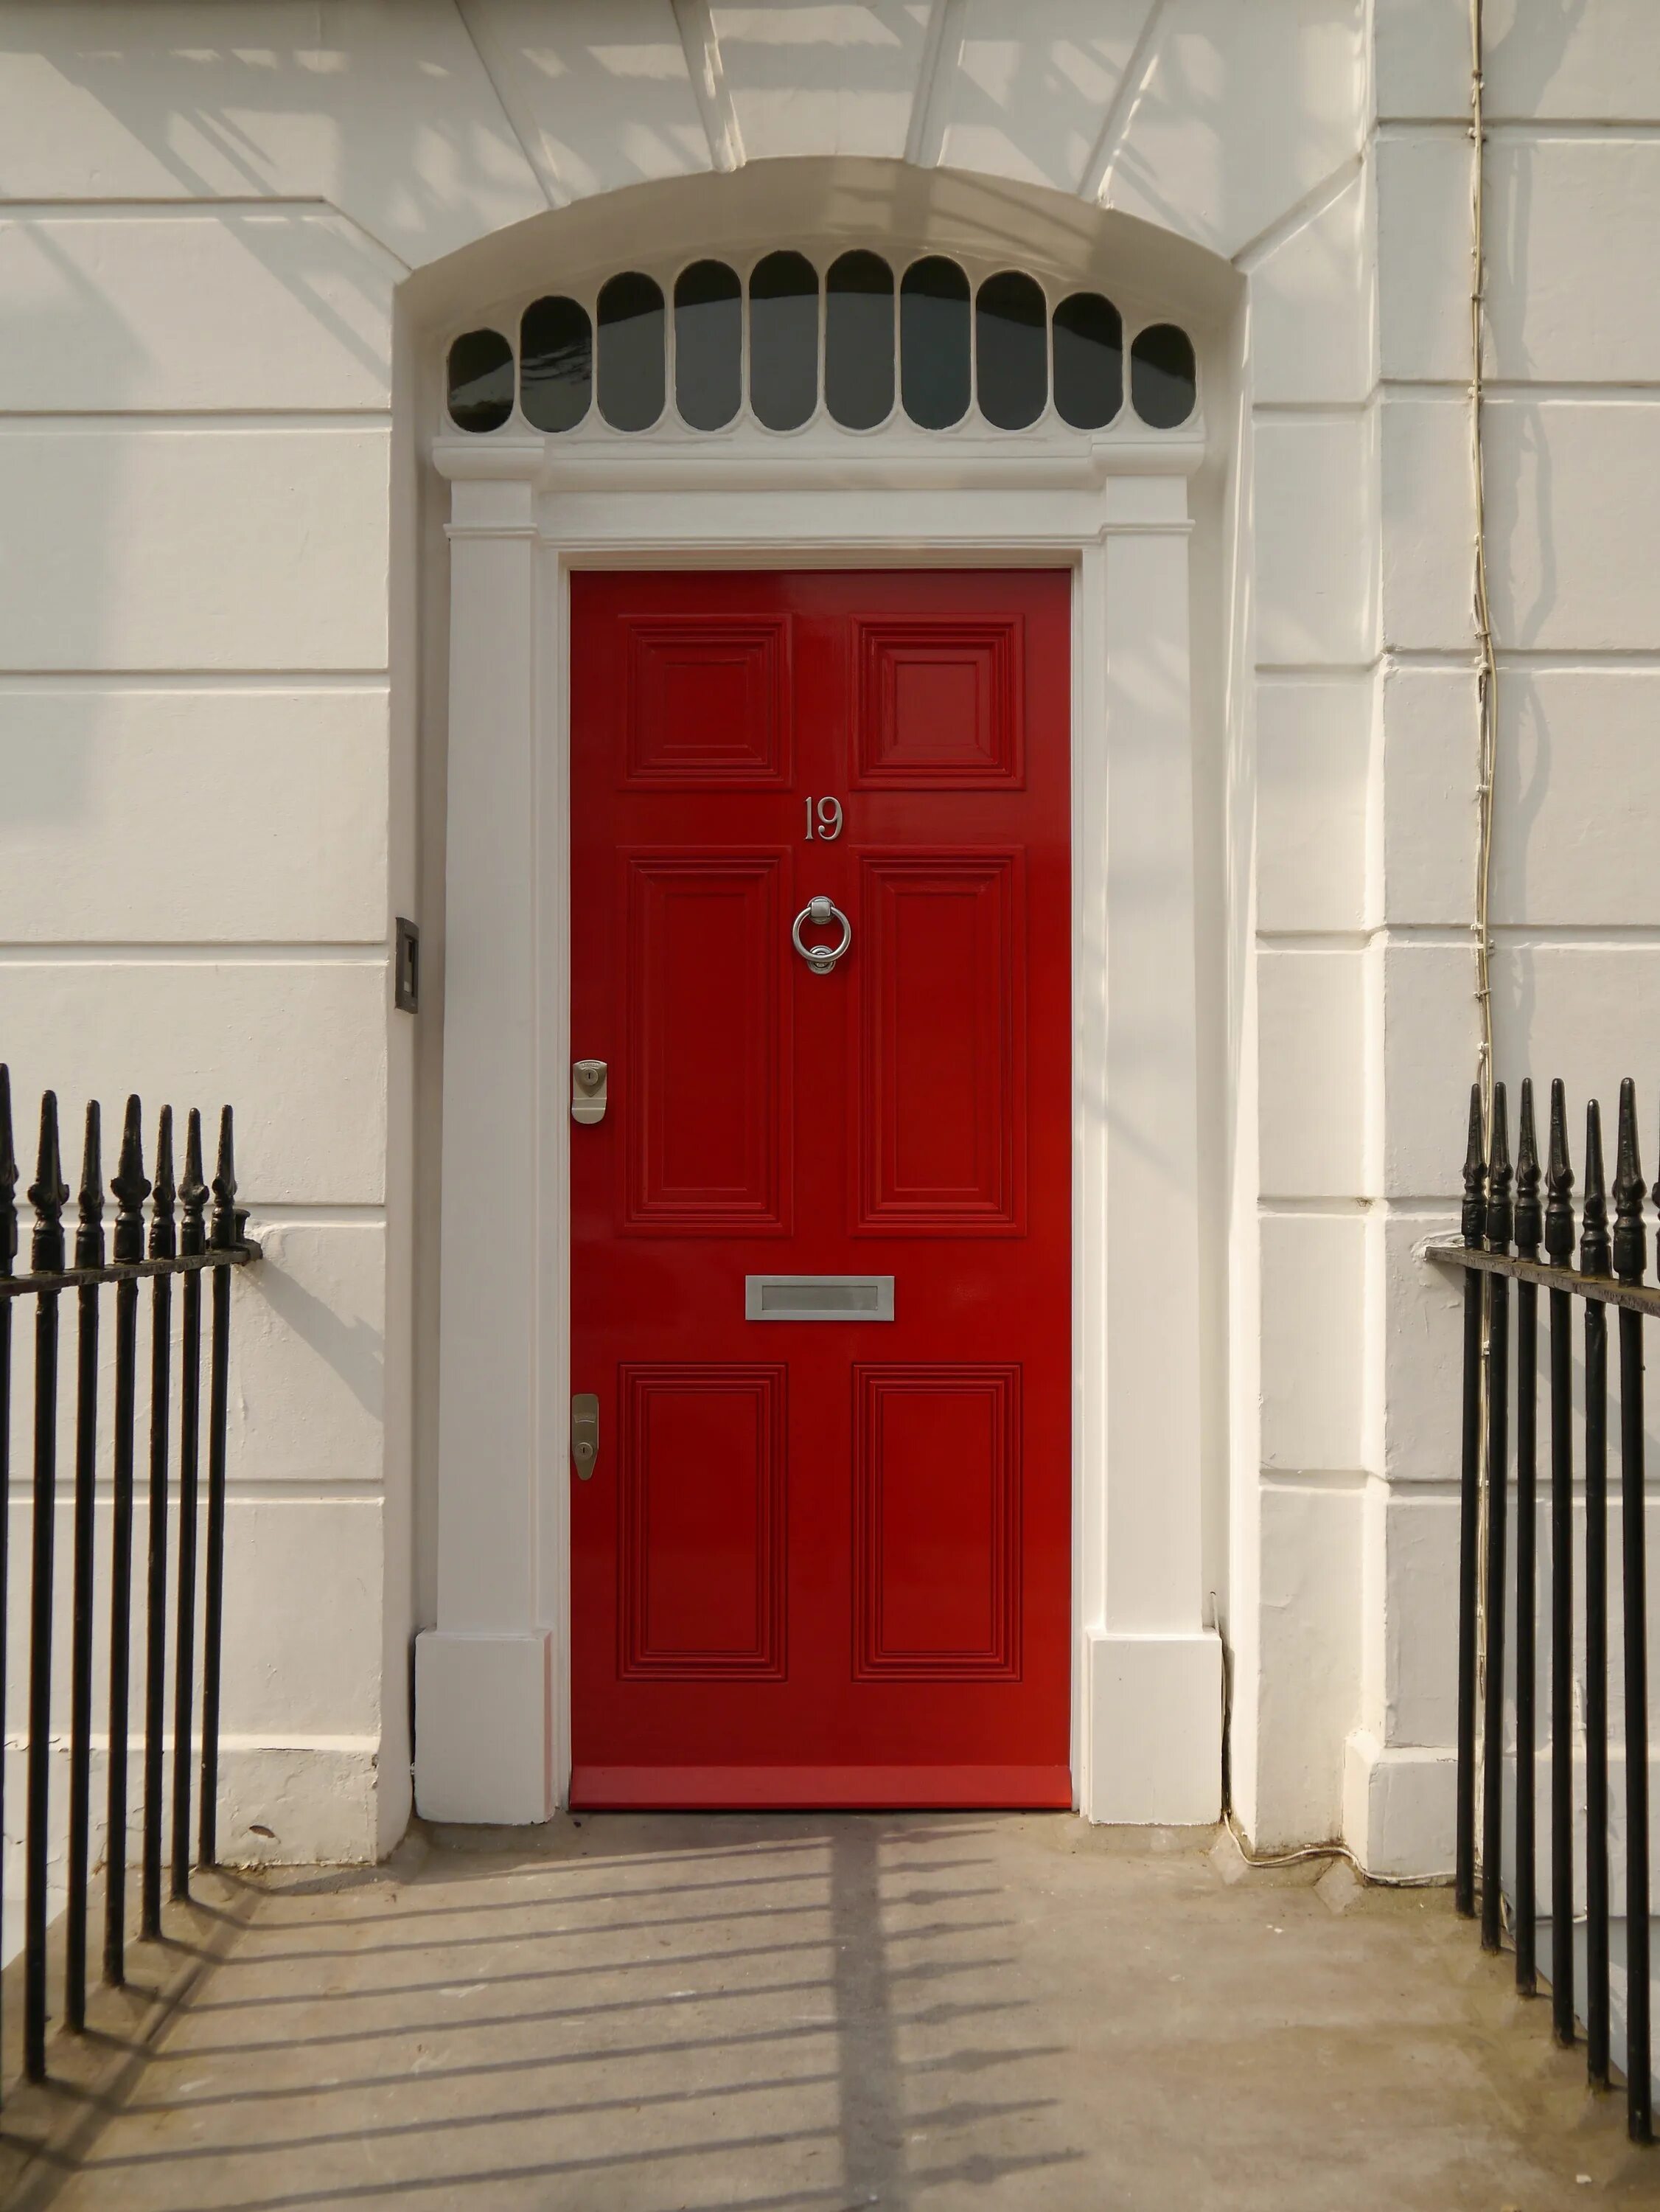 Красная дверь. Двери в английском стиле. Красивая красная дверь. Дверь красного цвета. Как открыть красную дверь